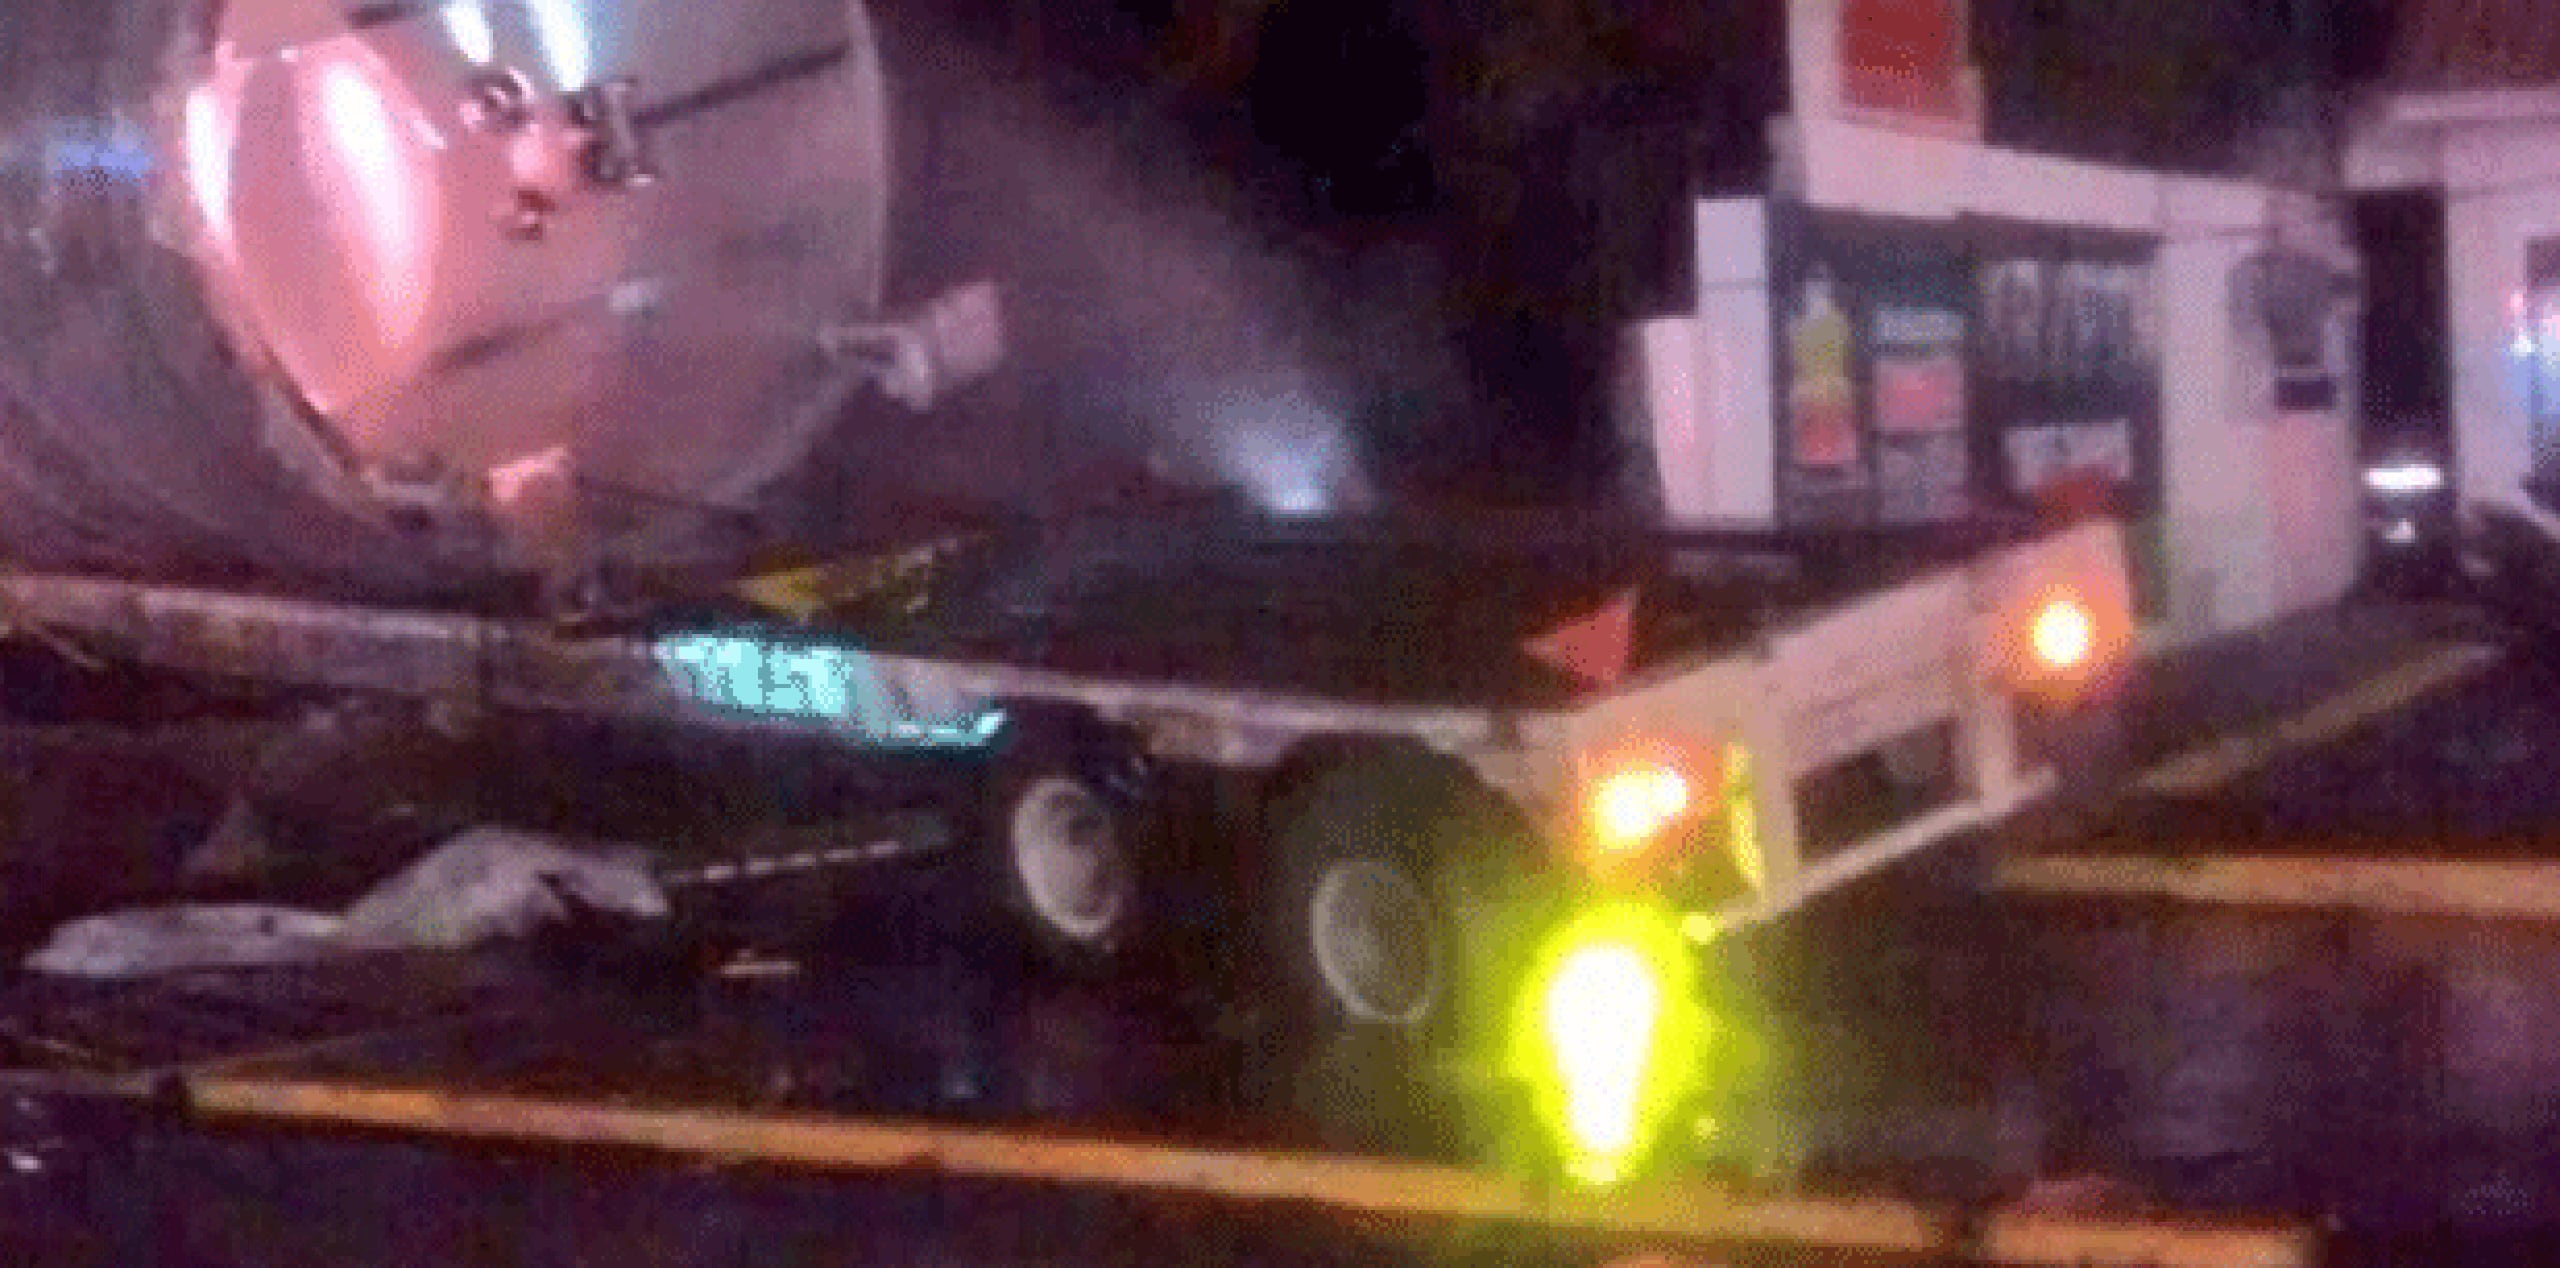 El camión, propiedad de la empresa Transportes Beltrán Romero, acabó impactado en una casa y fue en ese último choque cuando se cree que falleció el chofer. (Twitter)